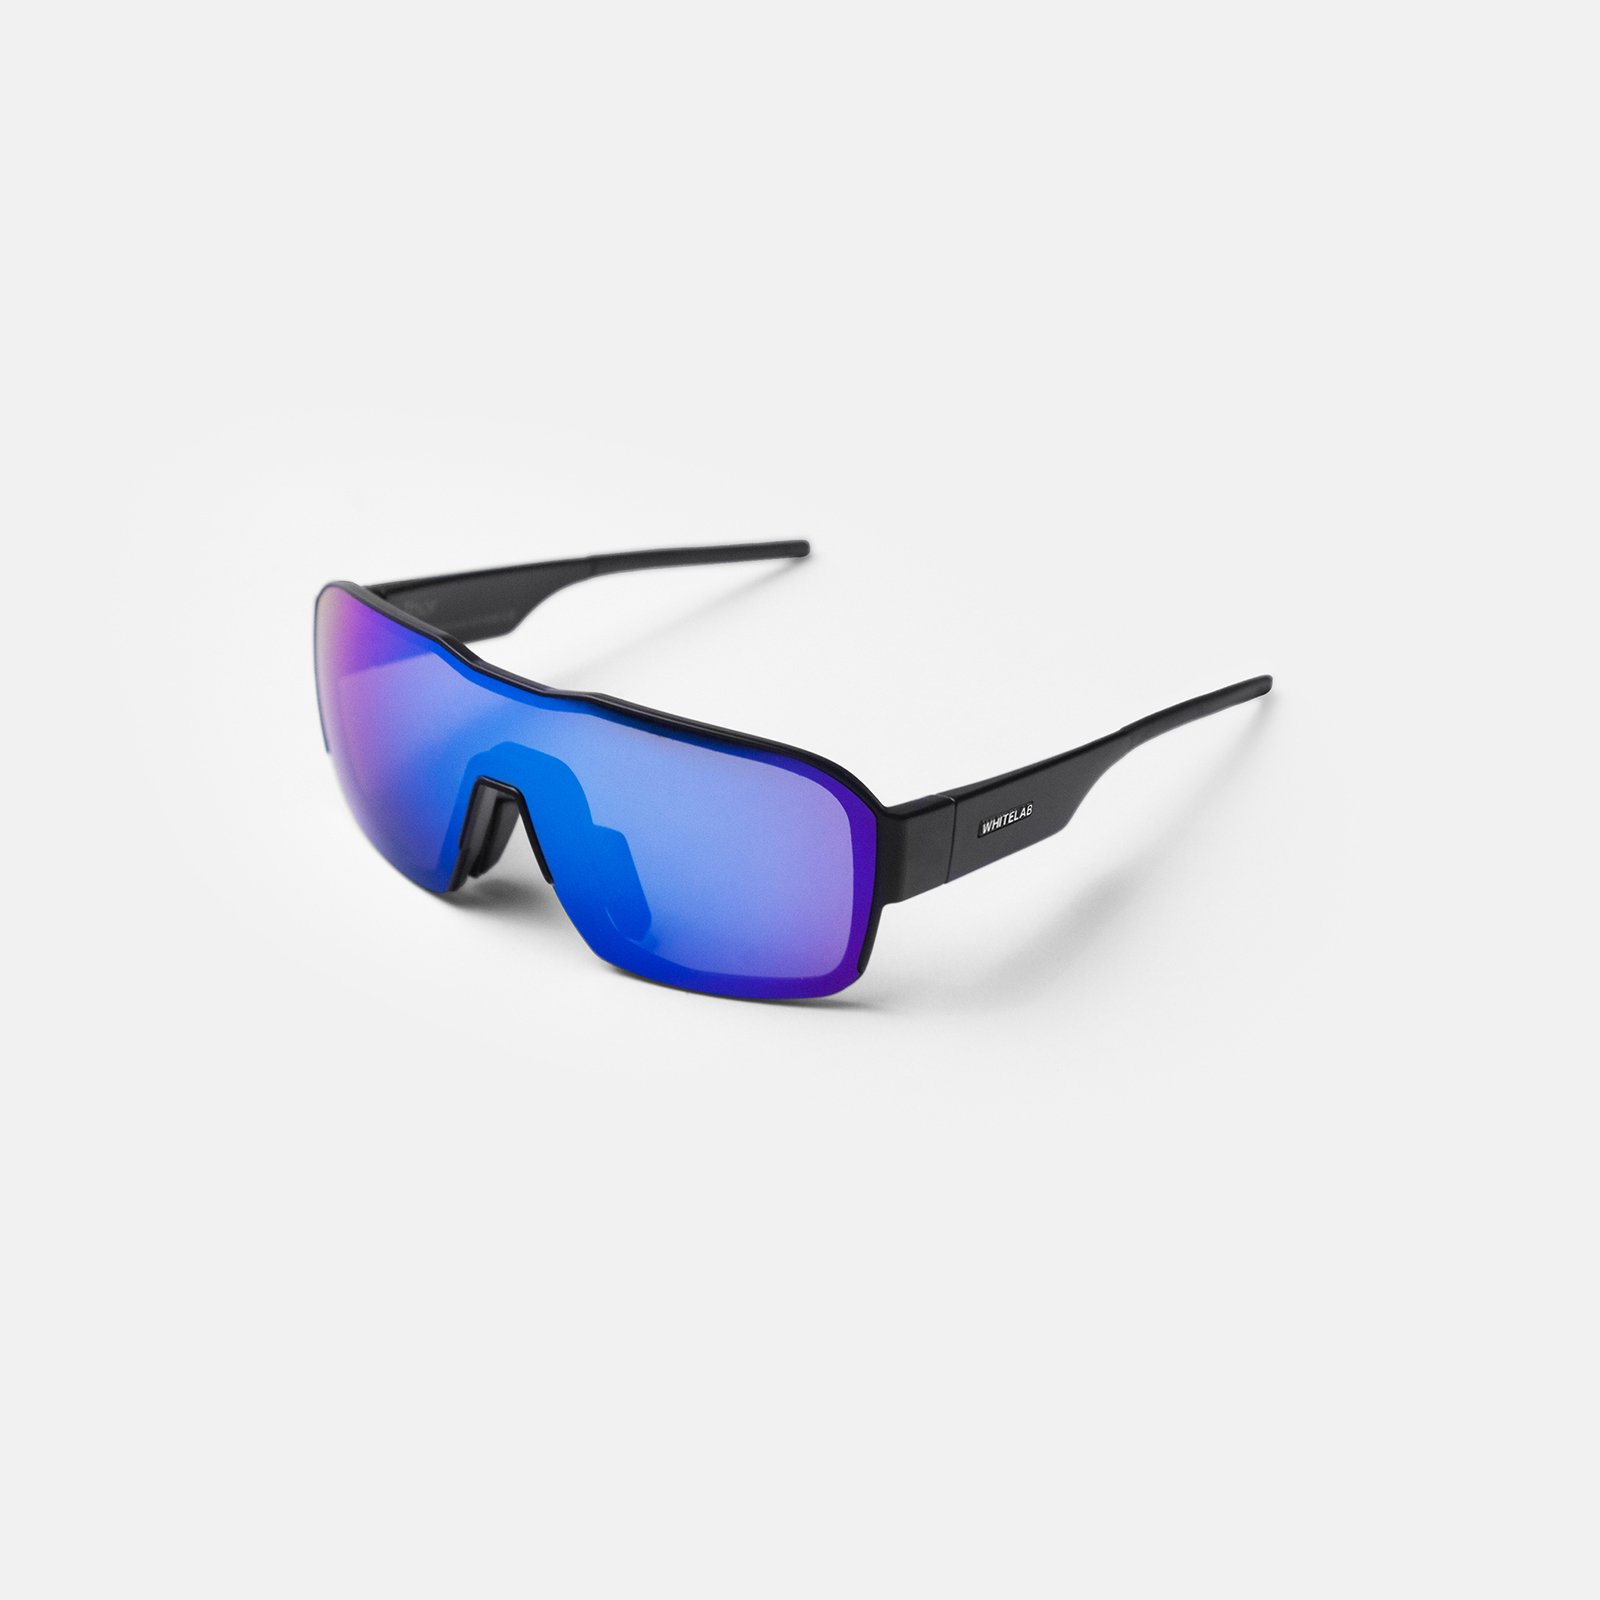  синие солнцезащитные очки White Lab Thor Thor-ultramarin - цена, описание, фото 3